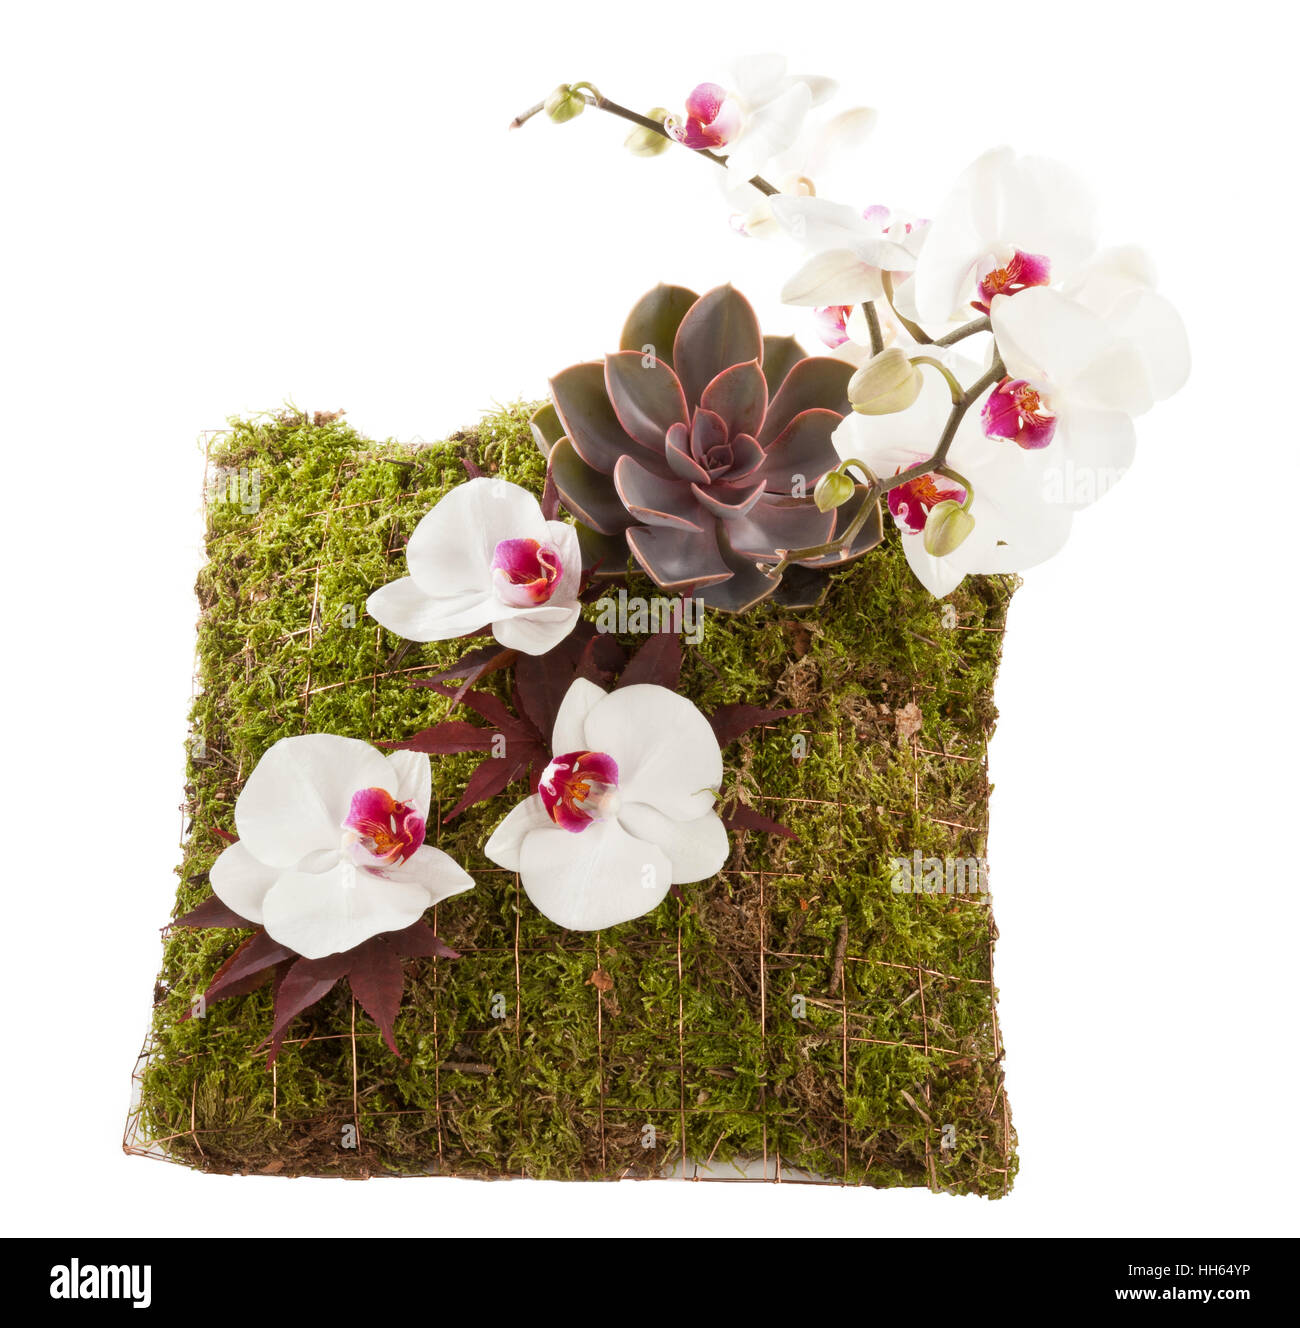 A flower arrangement displayed on a moss pillow Stock Photo